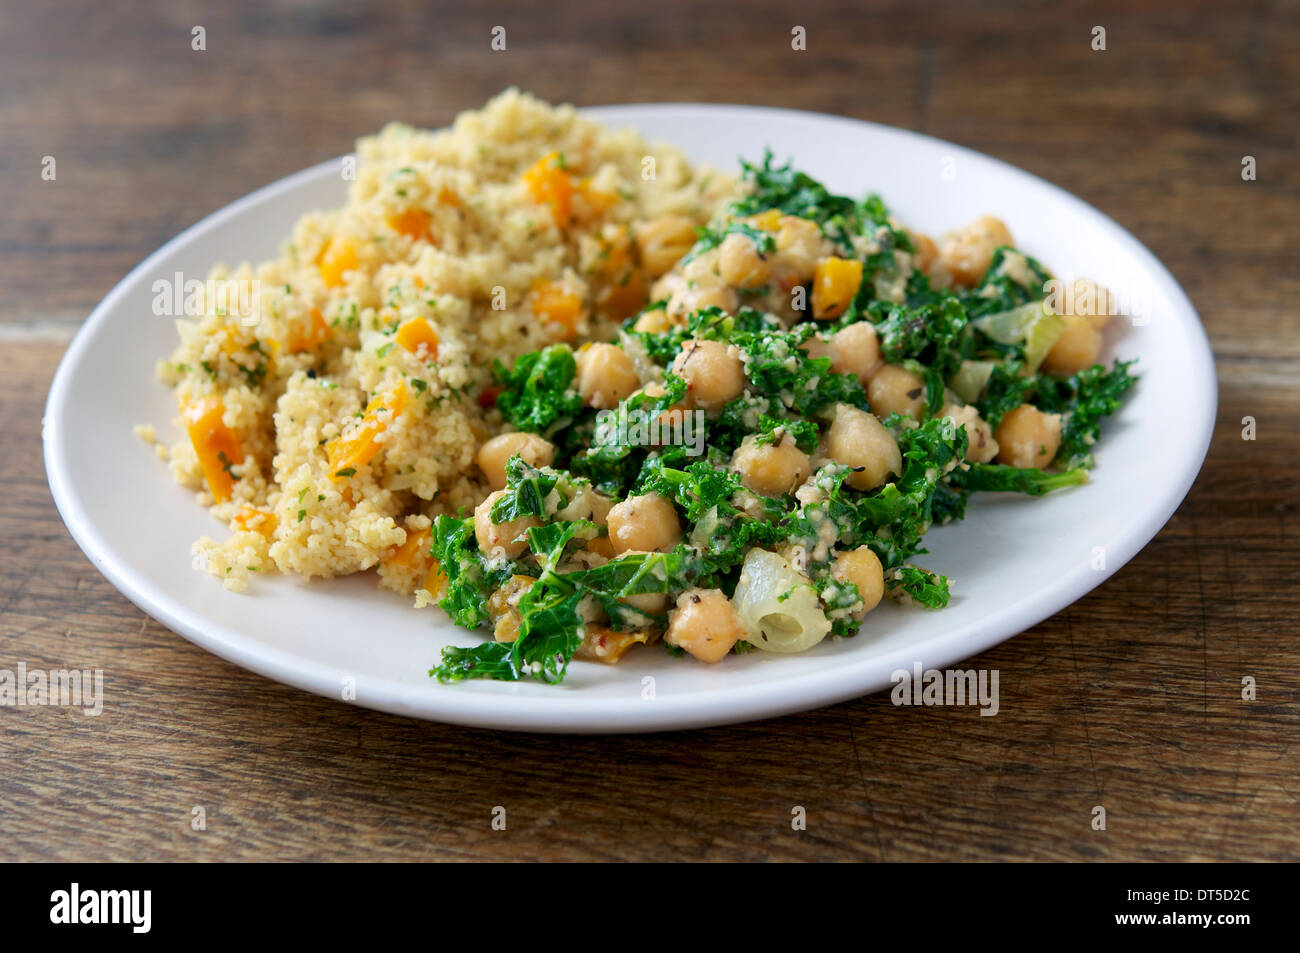 Un copieux repas avec remplissage et Kale, d'anacardiers et de pois chiches, servi avec des restes de couscous. Banque D'Images